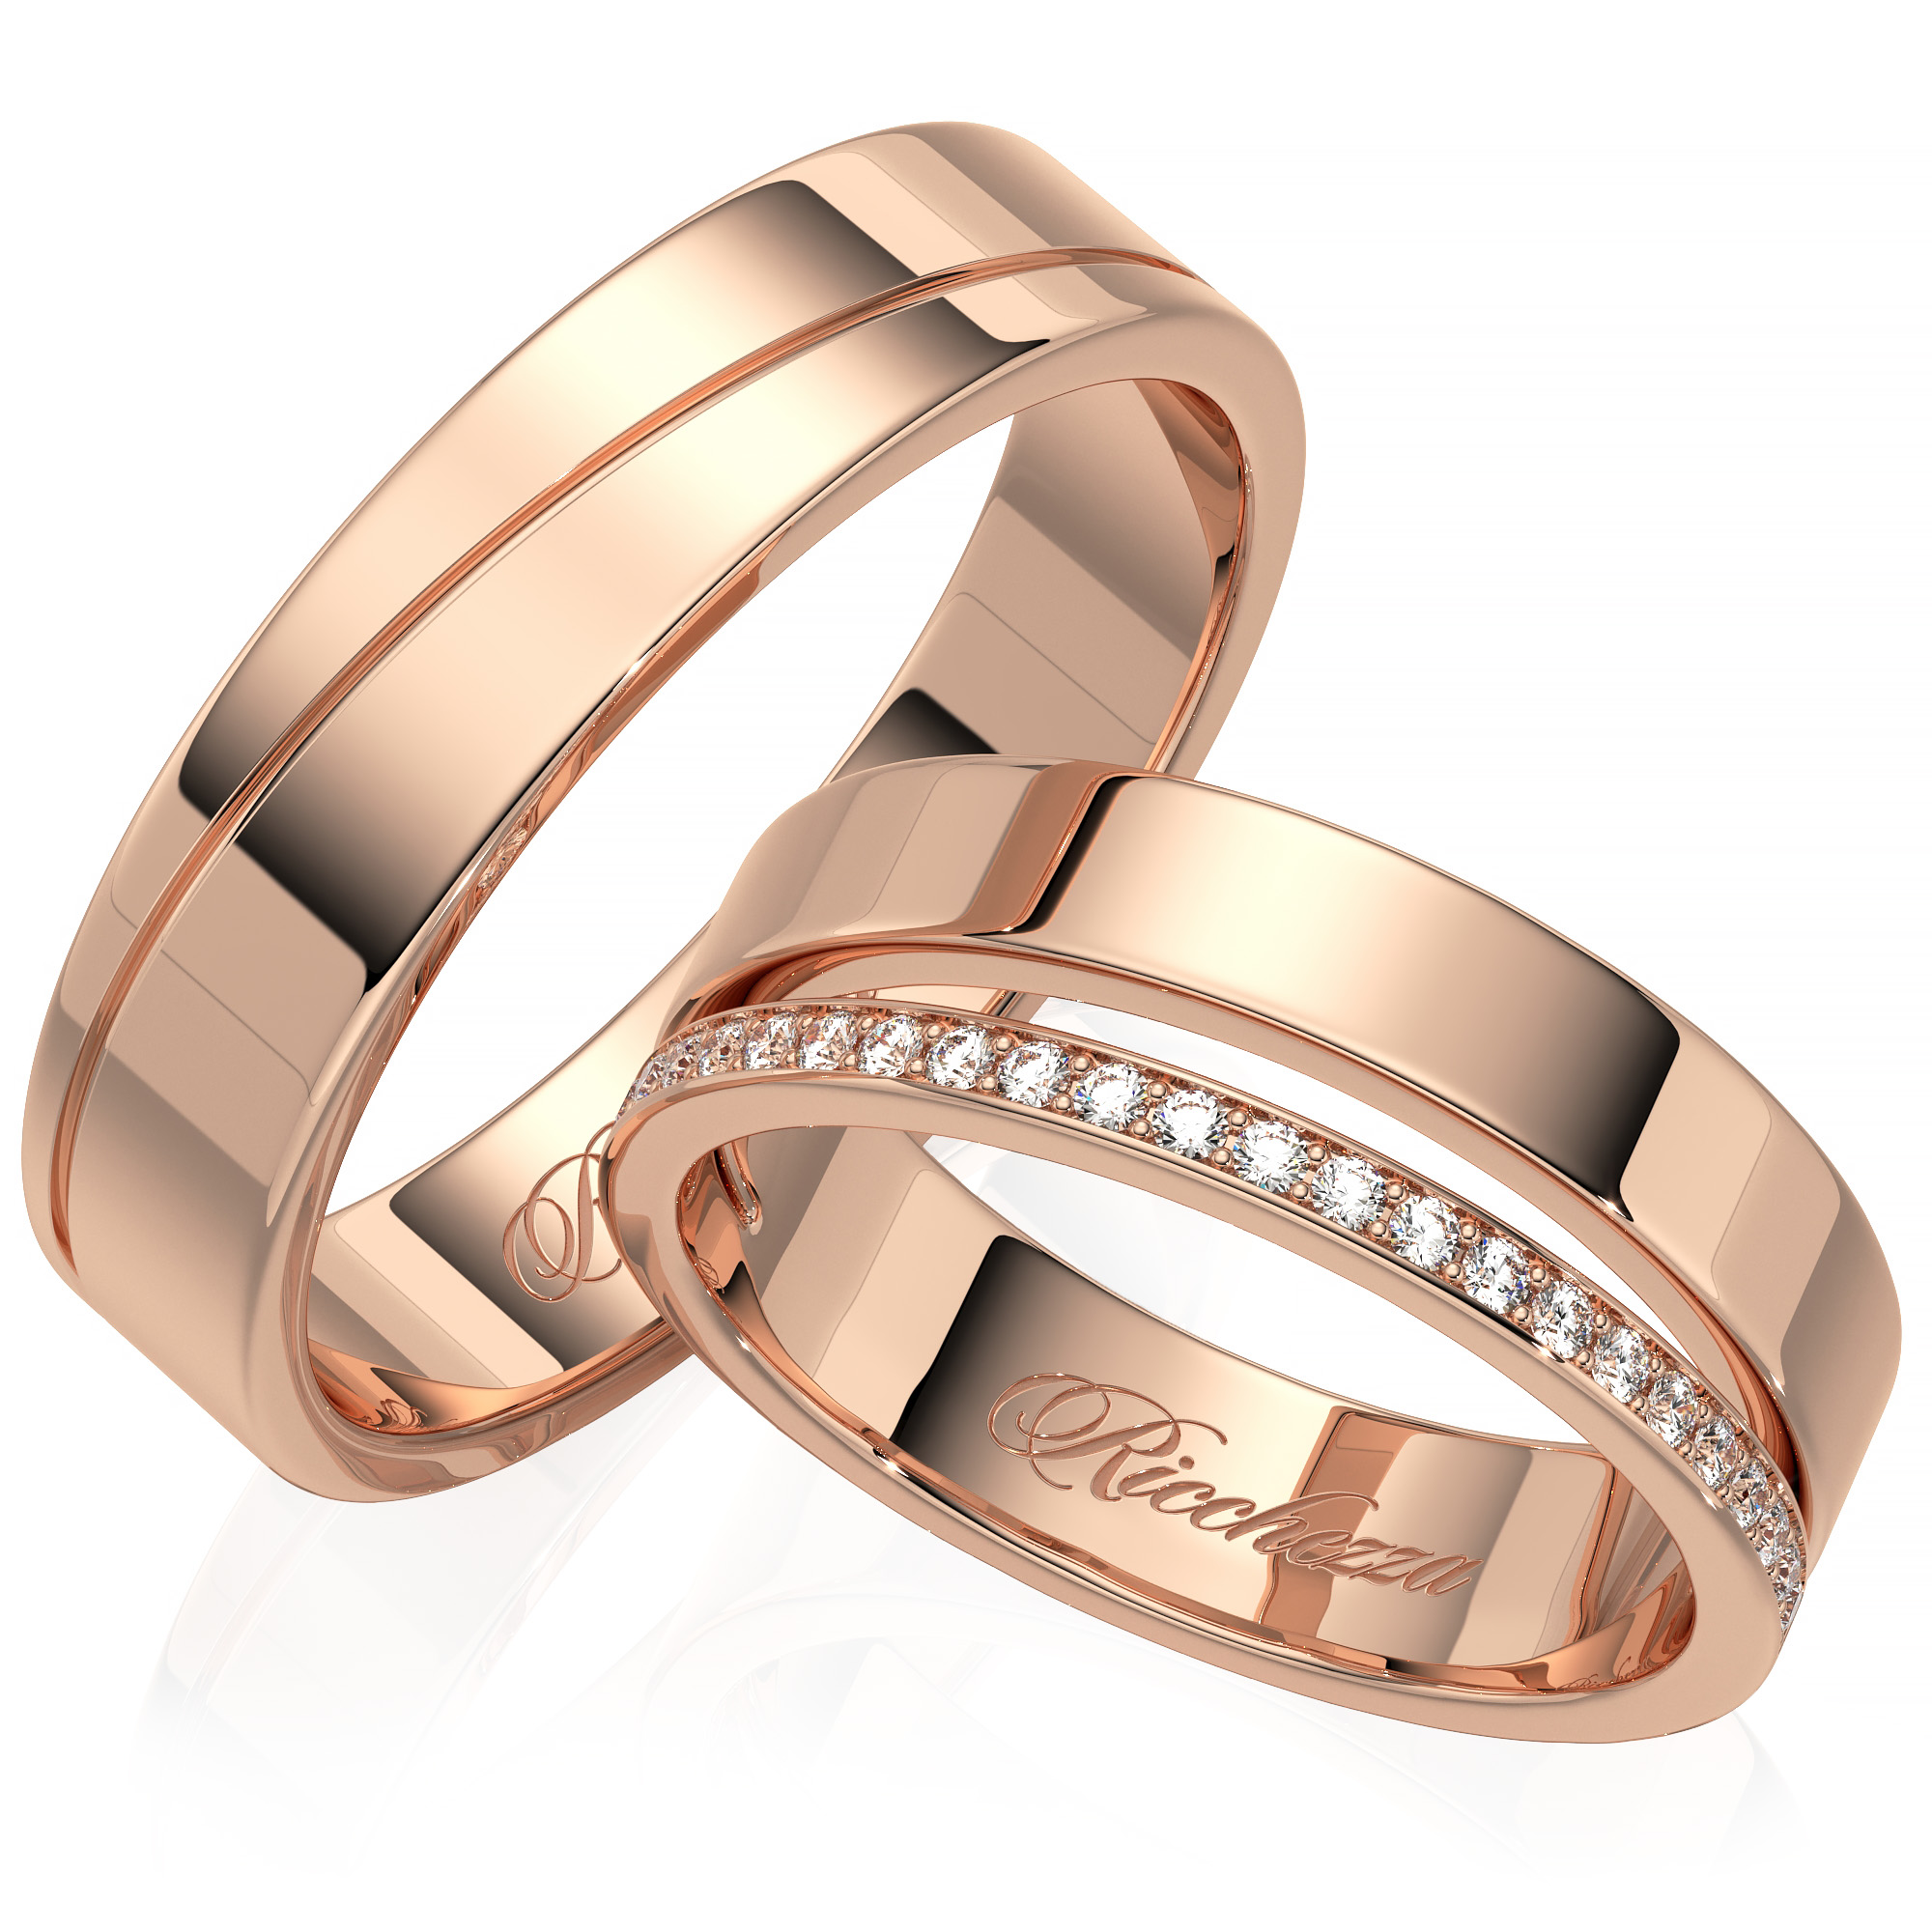 Обручальные кольца золотые на свадьбу. Обручальные кольца Картье платина. Полновесные золотые кольца обручальные. Очень красивые обручальные кольца. Obruchalmoe Kolco.